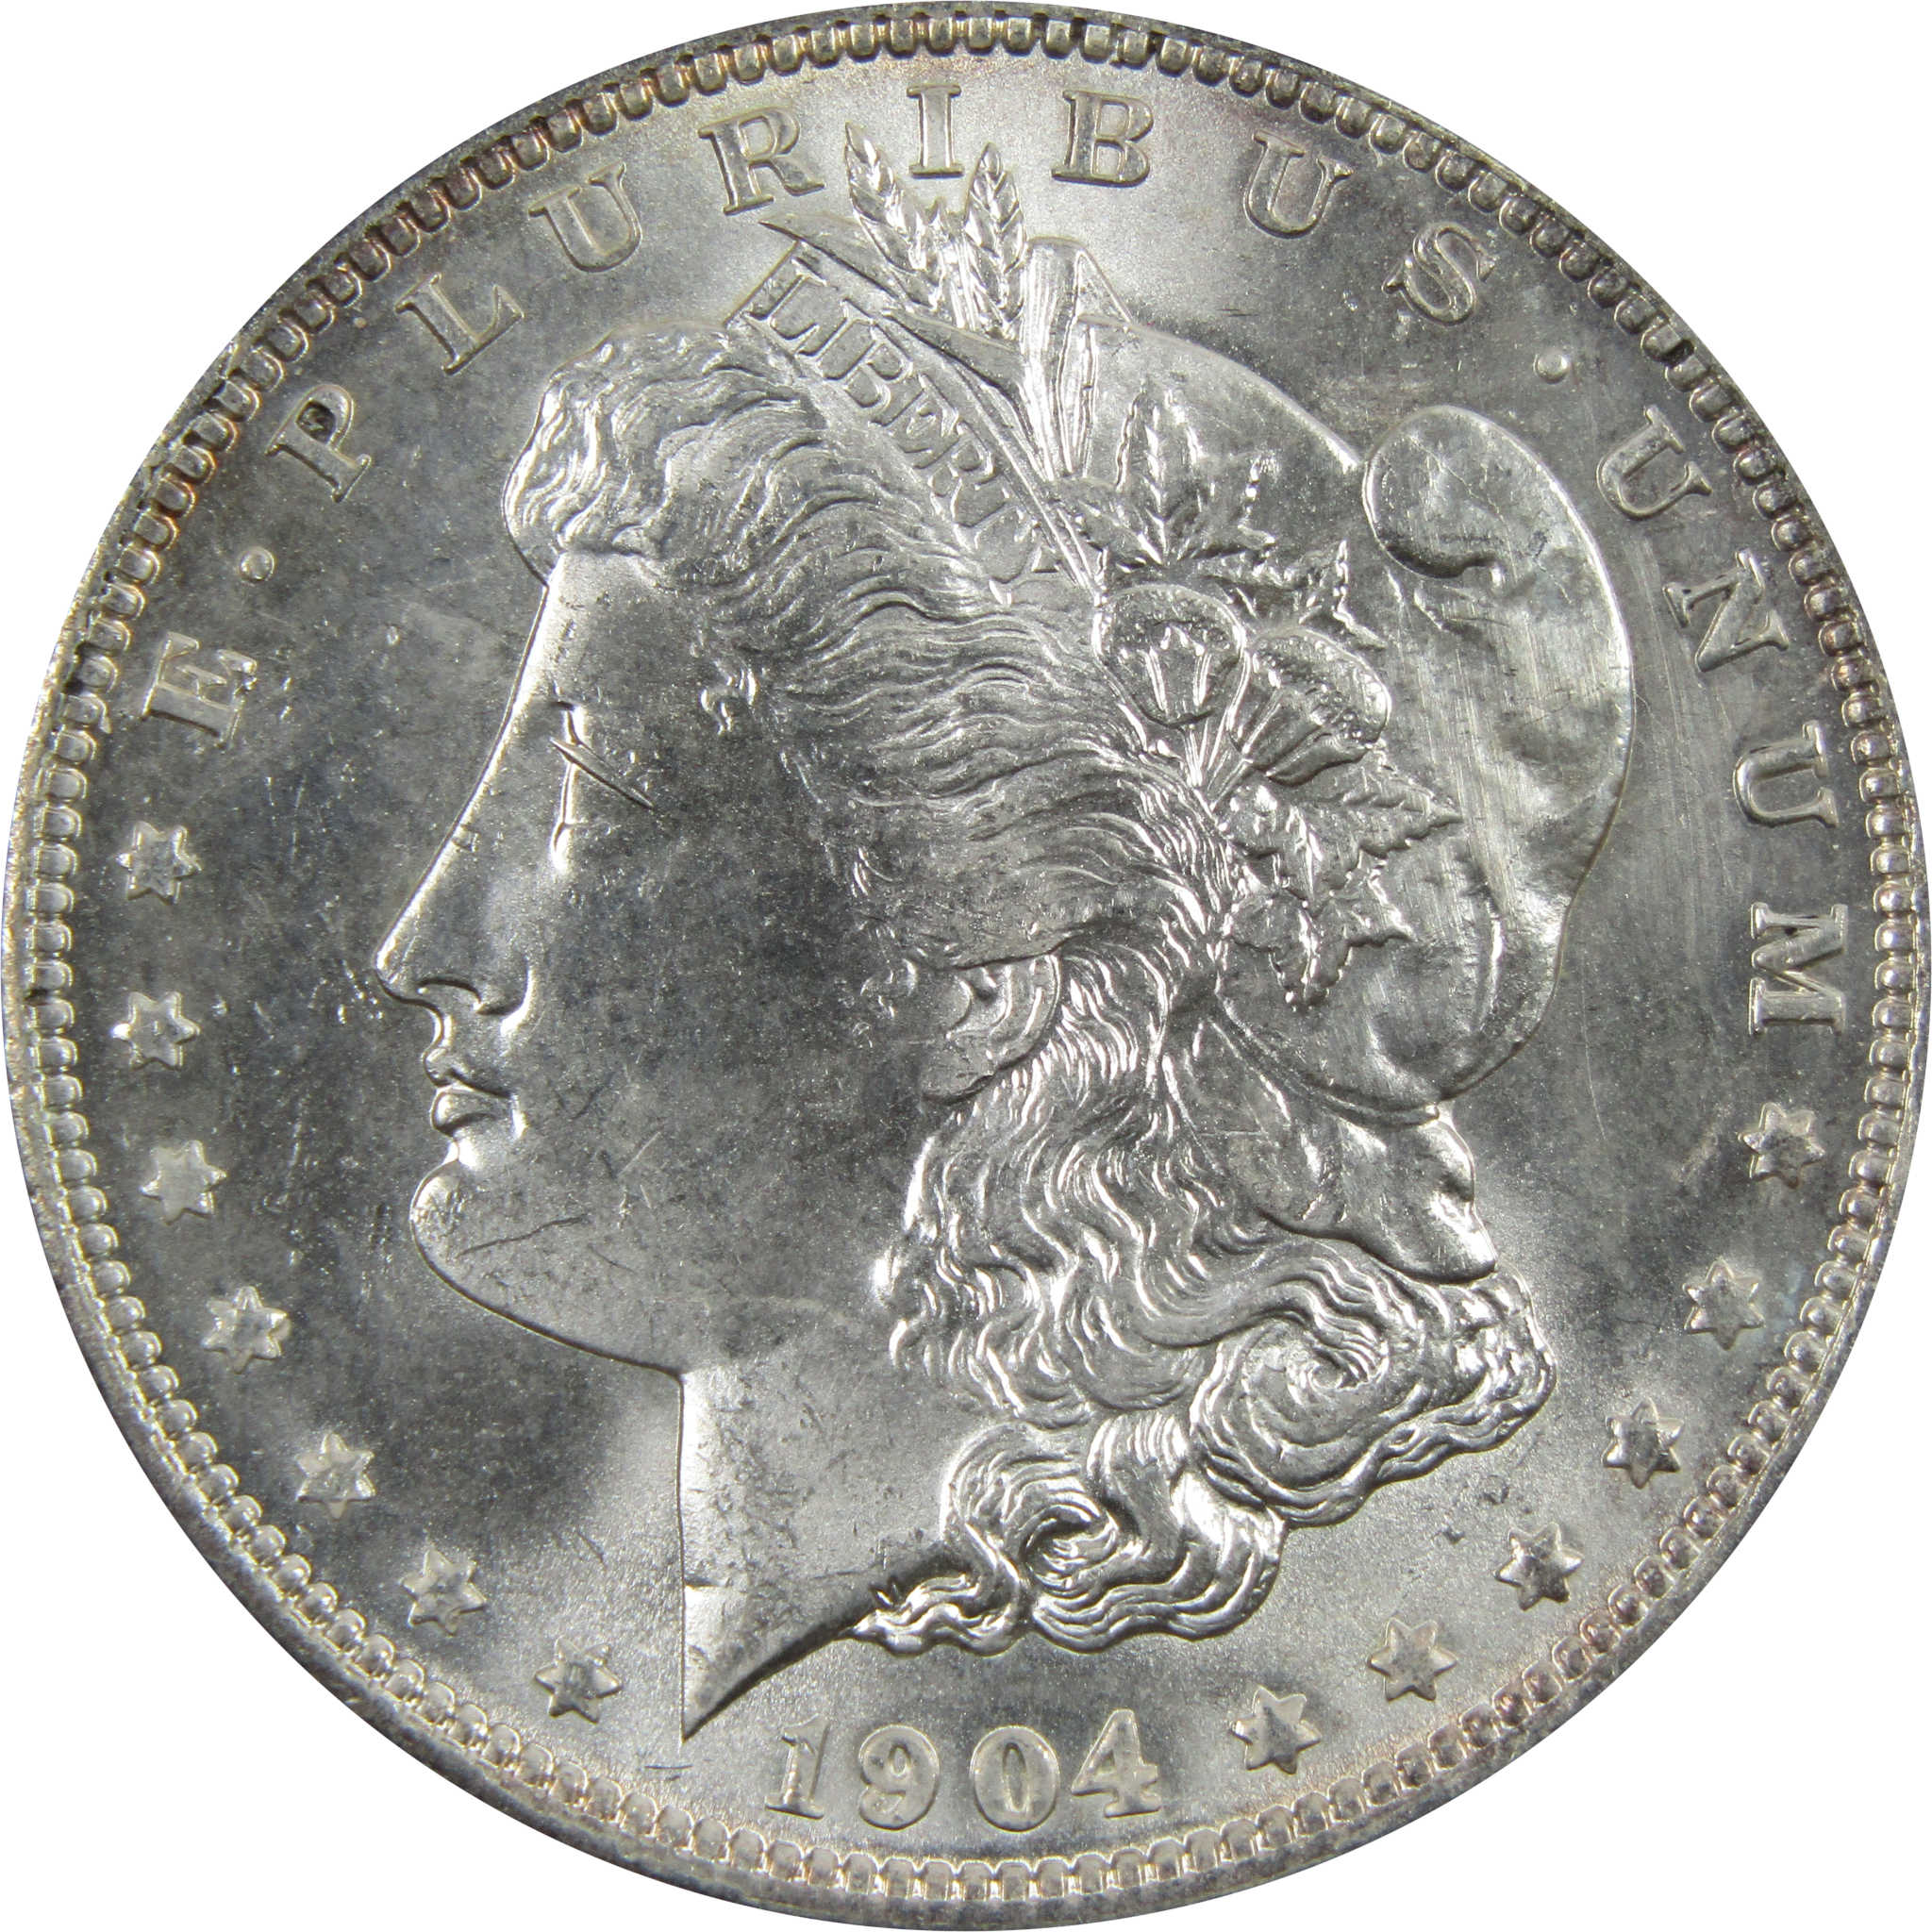 1904 O Morgan Dollar BU Uncirculated 90% Silver $1 Coin SKU:I4853 - Morgan coin - Morgan silver dollar - Morgan silver dollar for sale - Profile Coins &amp; Collectibles